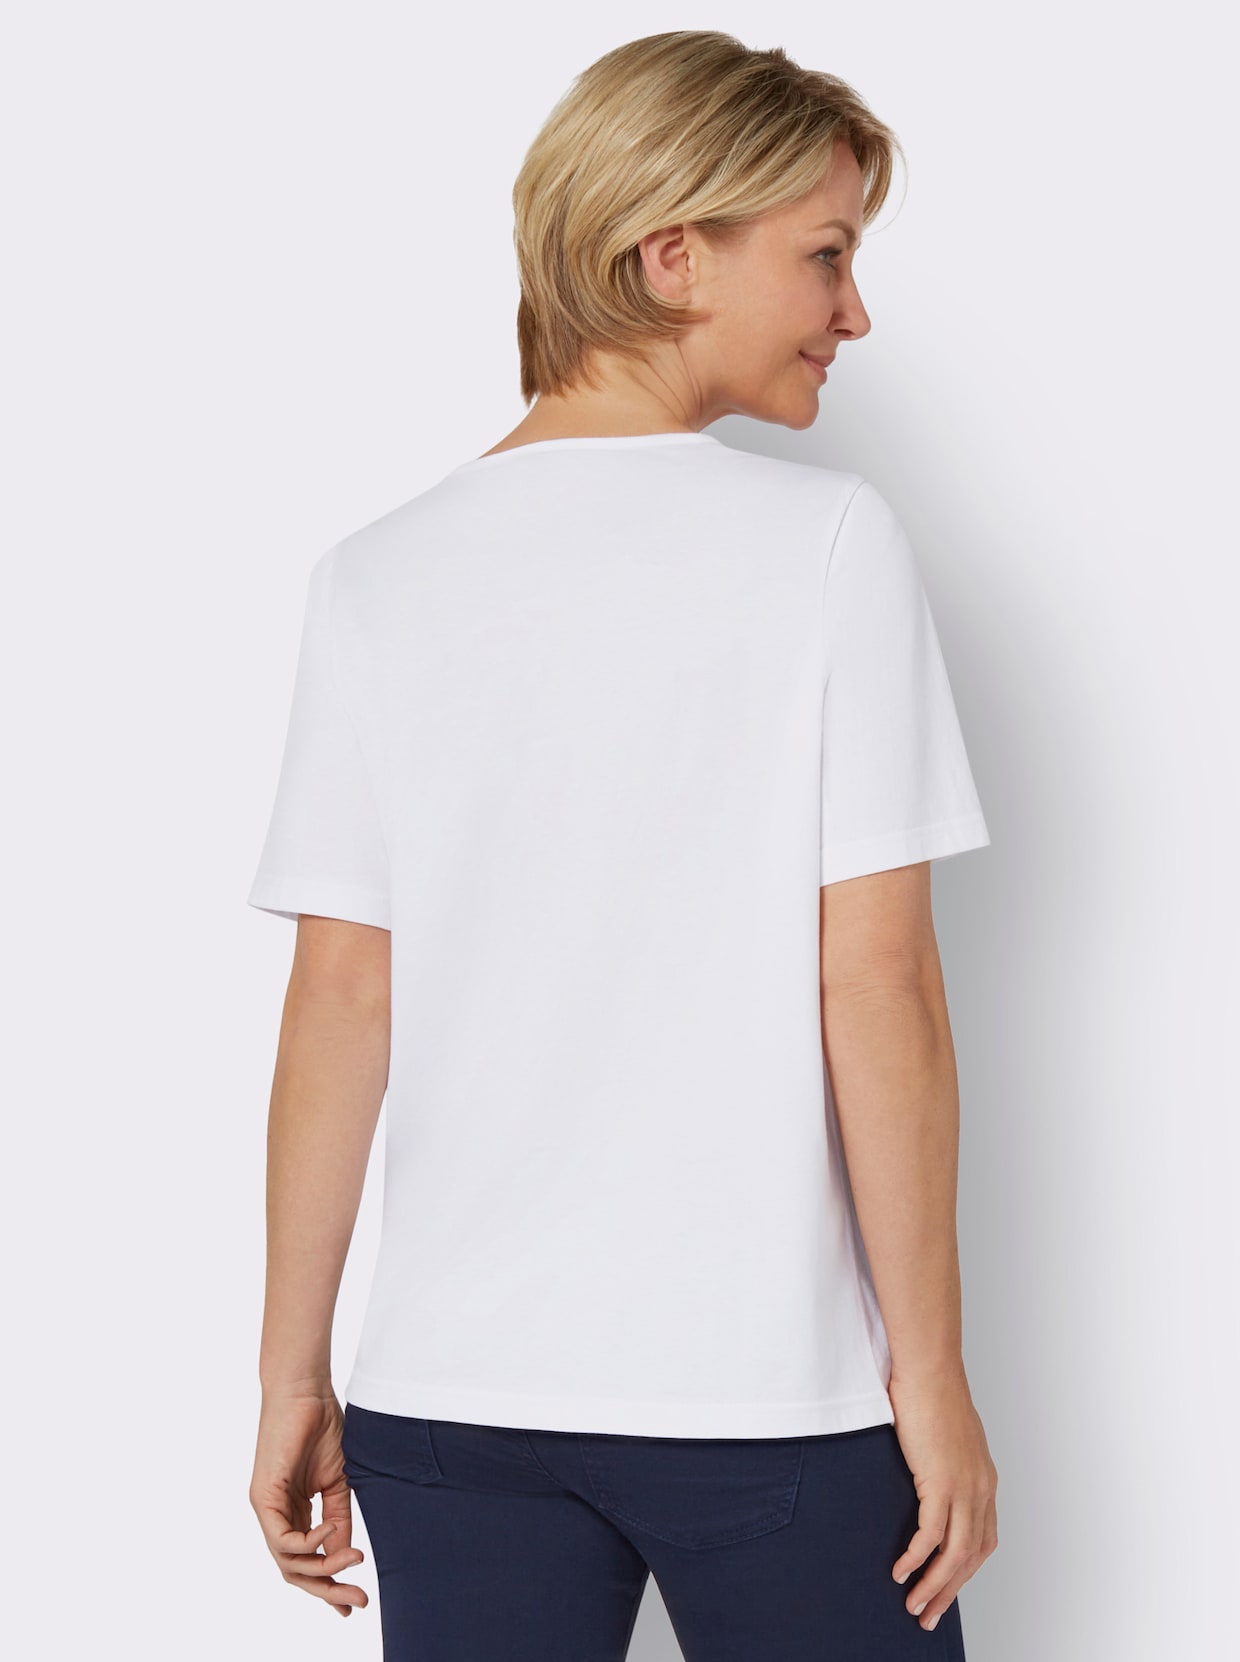 Kurzarm-Shirt - weiß